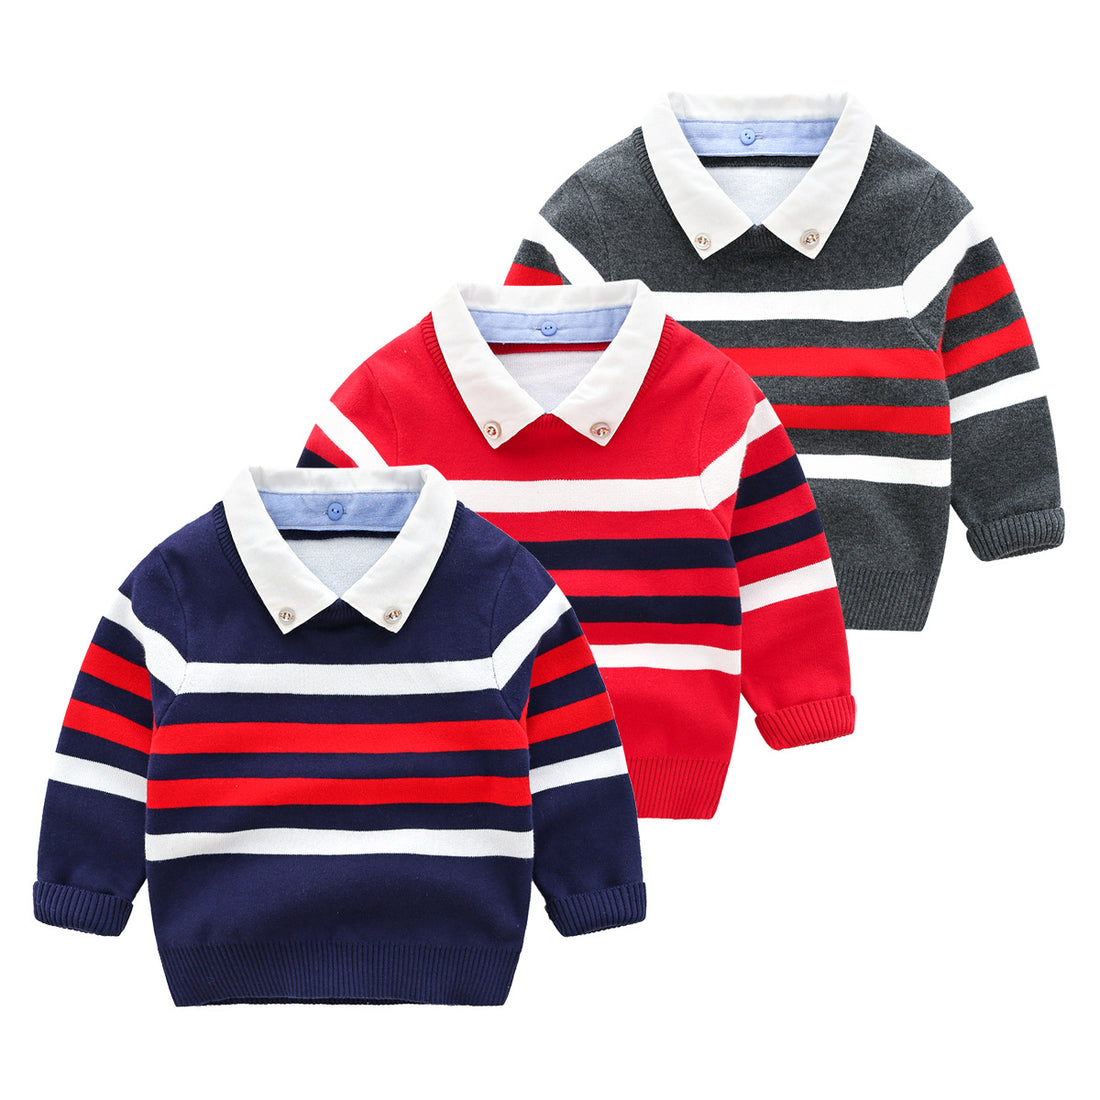 [513563] - Atasan Sweater Kerah Lengan Panjang Anak Cowok Cewek - Motif Striped Strip